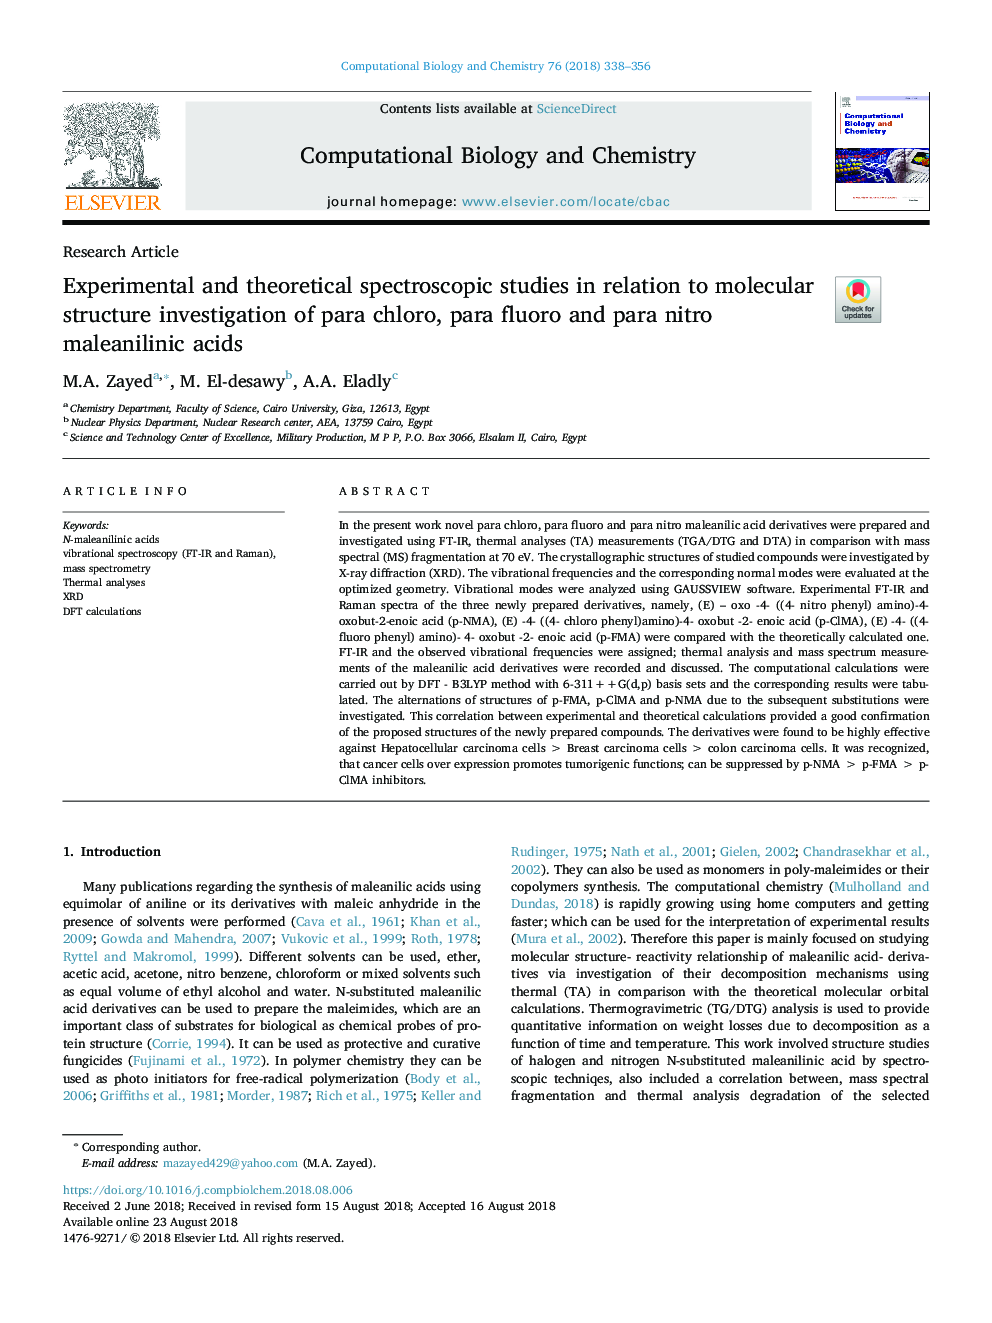 مطالعات طیف سنجی تجربی و نظری در ارتباط با بررسی ساختار مولکولی پاراکلرو، پارافرولورو و پارا نیترو مینایلیینیک اسید